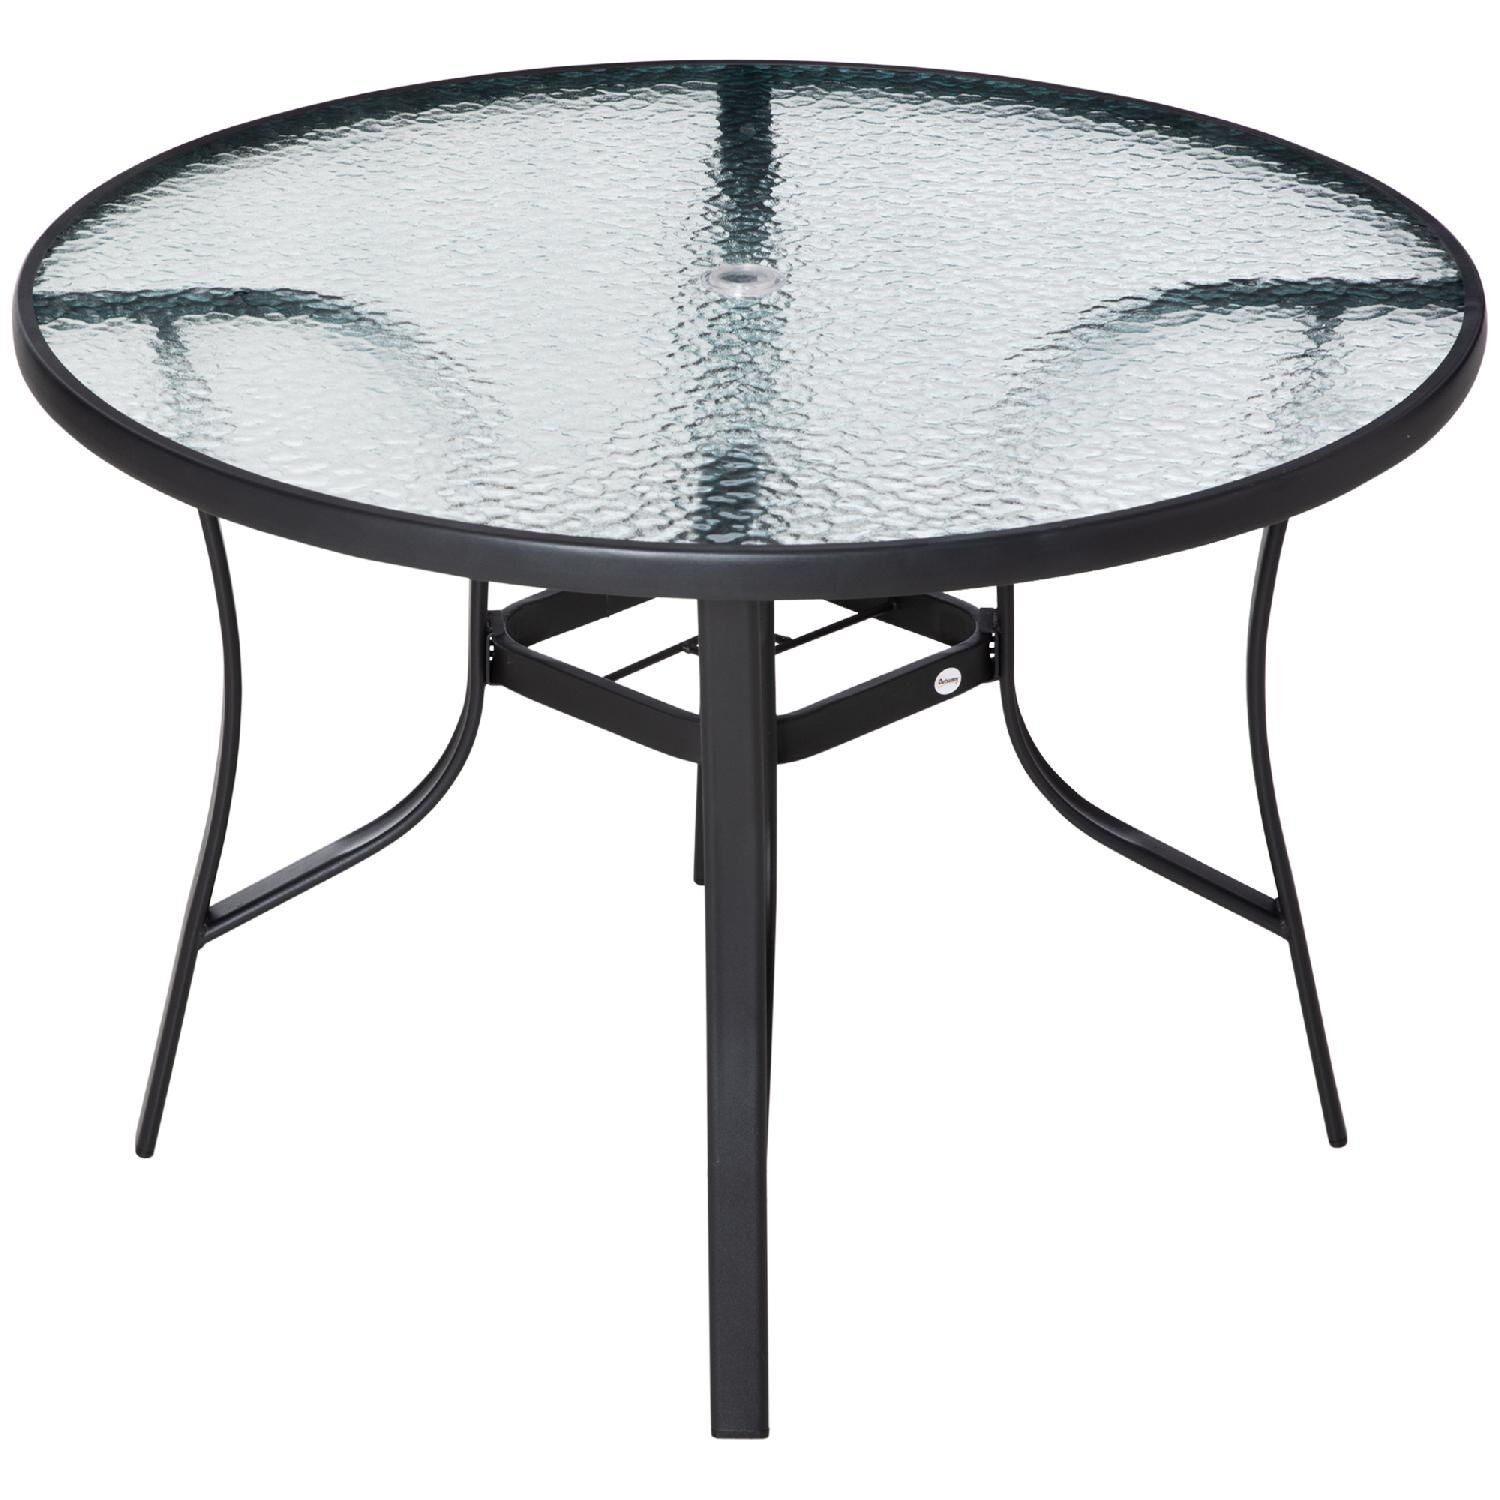 dechome 77784b tavolo da giardino rotondo in acciaio e vetro Ø 106.5x71 cm con foro per ombrellone colore nero - 77784b